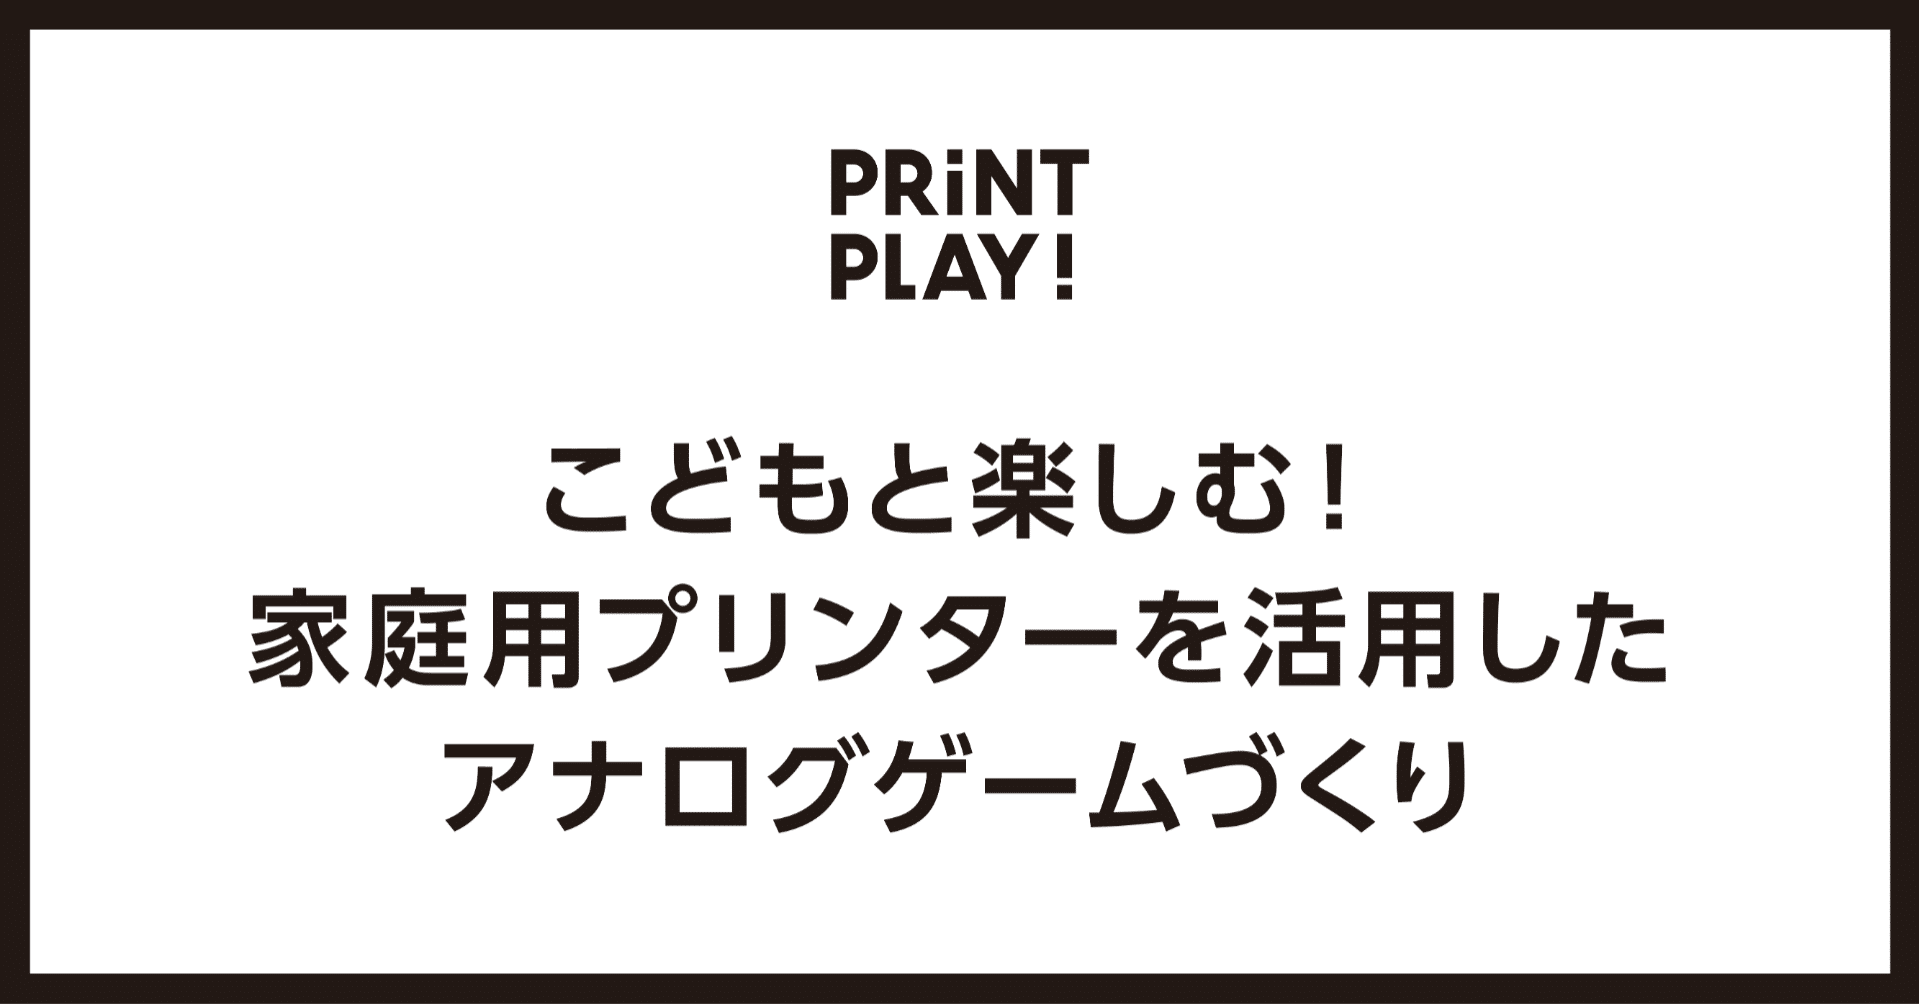 こどもと楽しむ 家庭用プリンターを活用したアナログゲームづくり Print Play Note